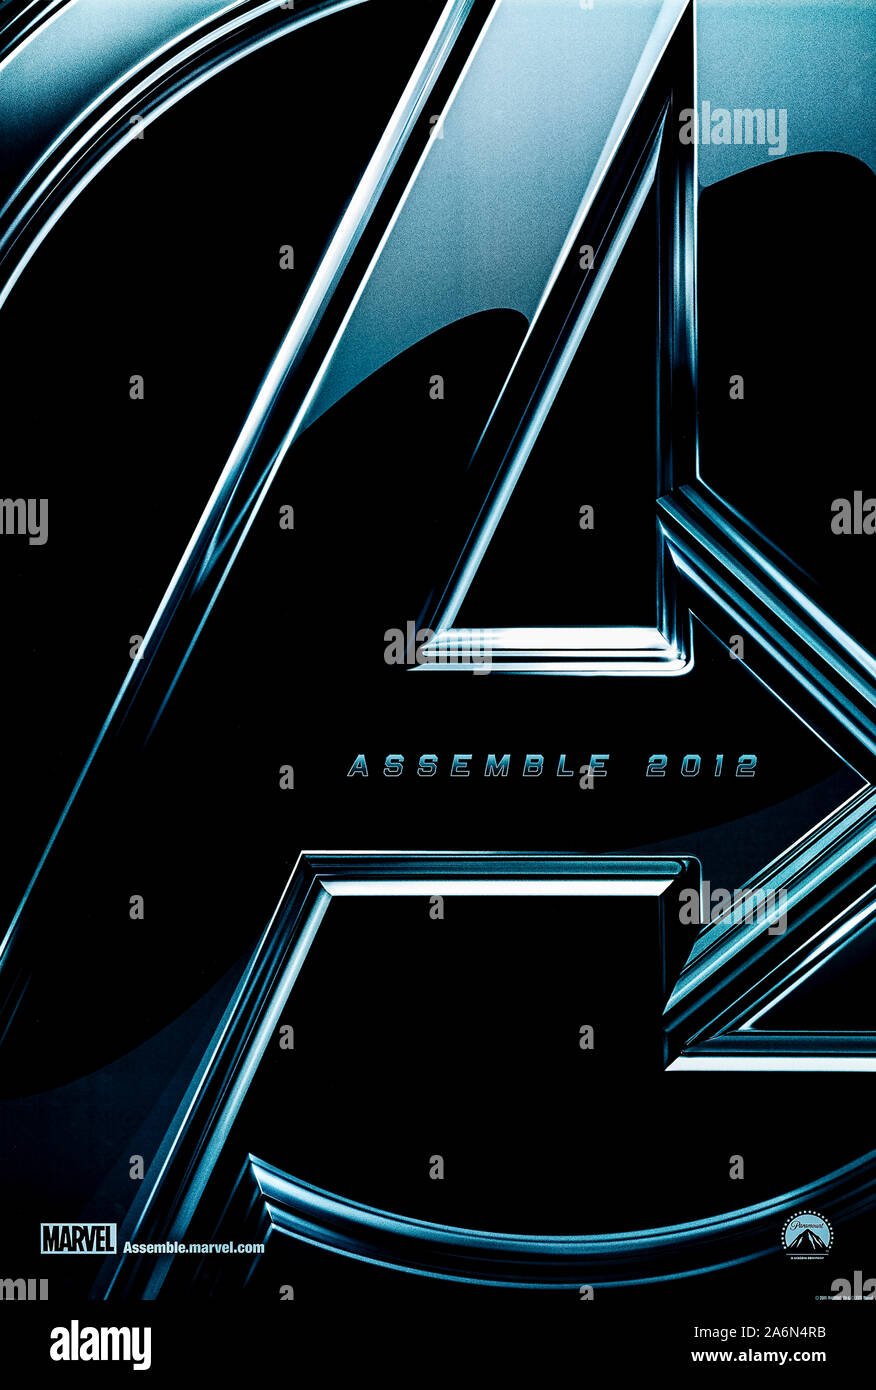 "Avengers zusammenbauen" (2012) von Joss Whedon Regie und Hauptdarsteller Robert Downey, Chris Evans und Scarlett Johansson. Die Rächer Schlacht Loki und eine fremde Armee, wie sie die Erde erobern. Stockfoto